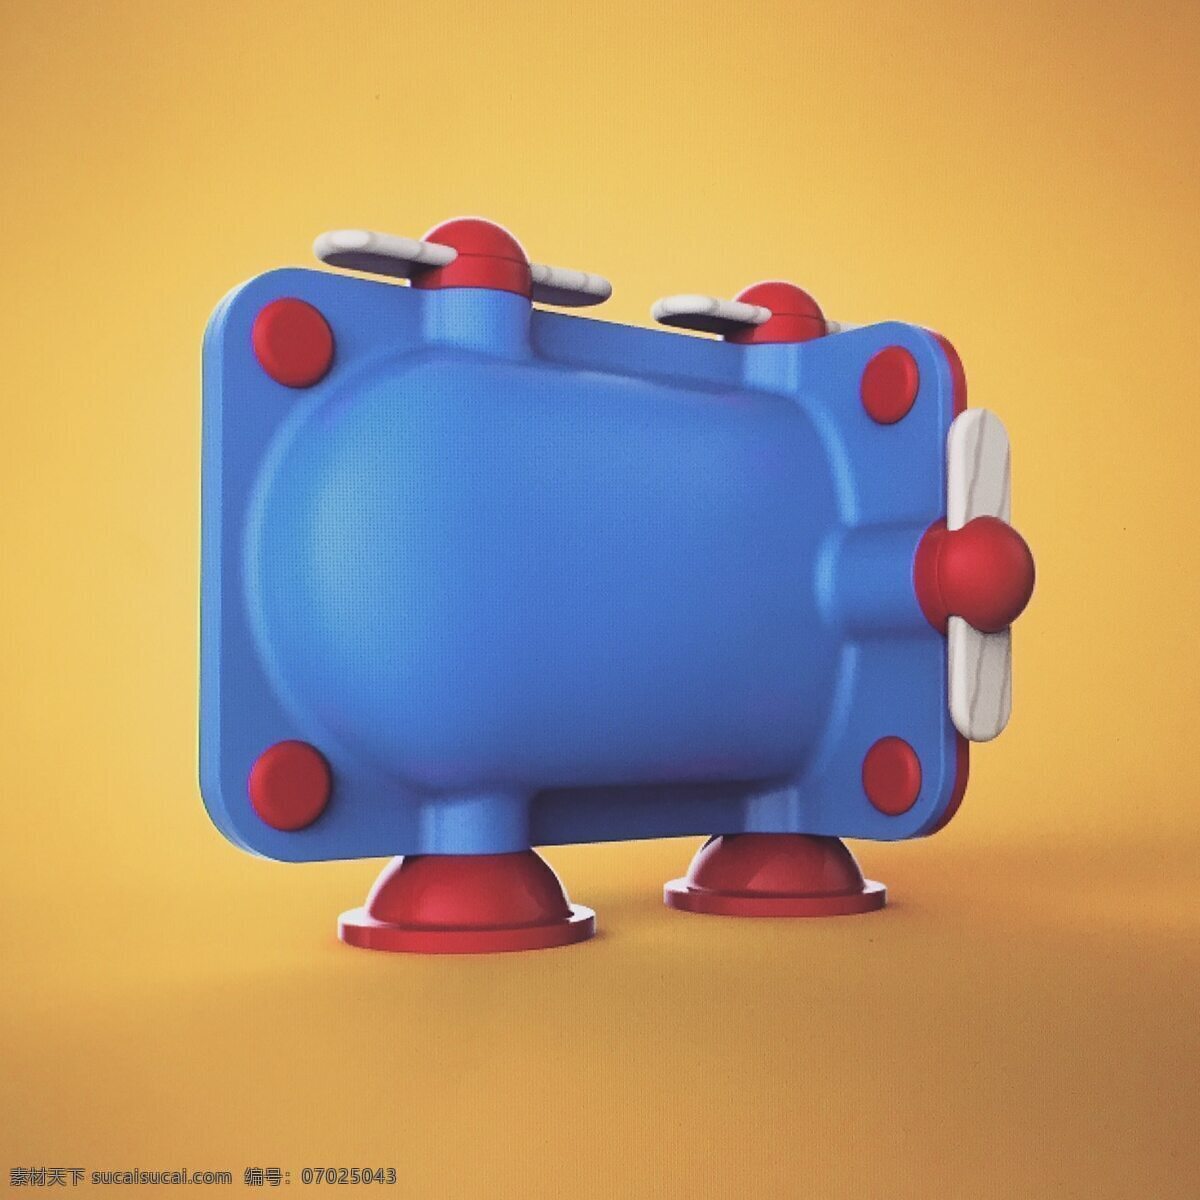 蓝色 简单 可爱 小孩 玩具 产品 长方形 红色 玩具飞机